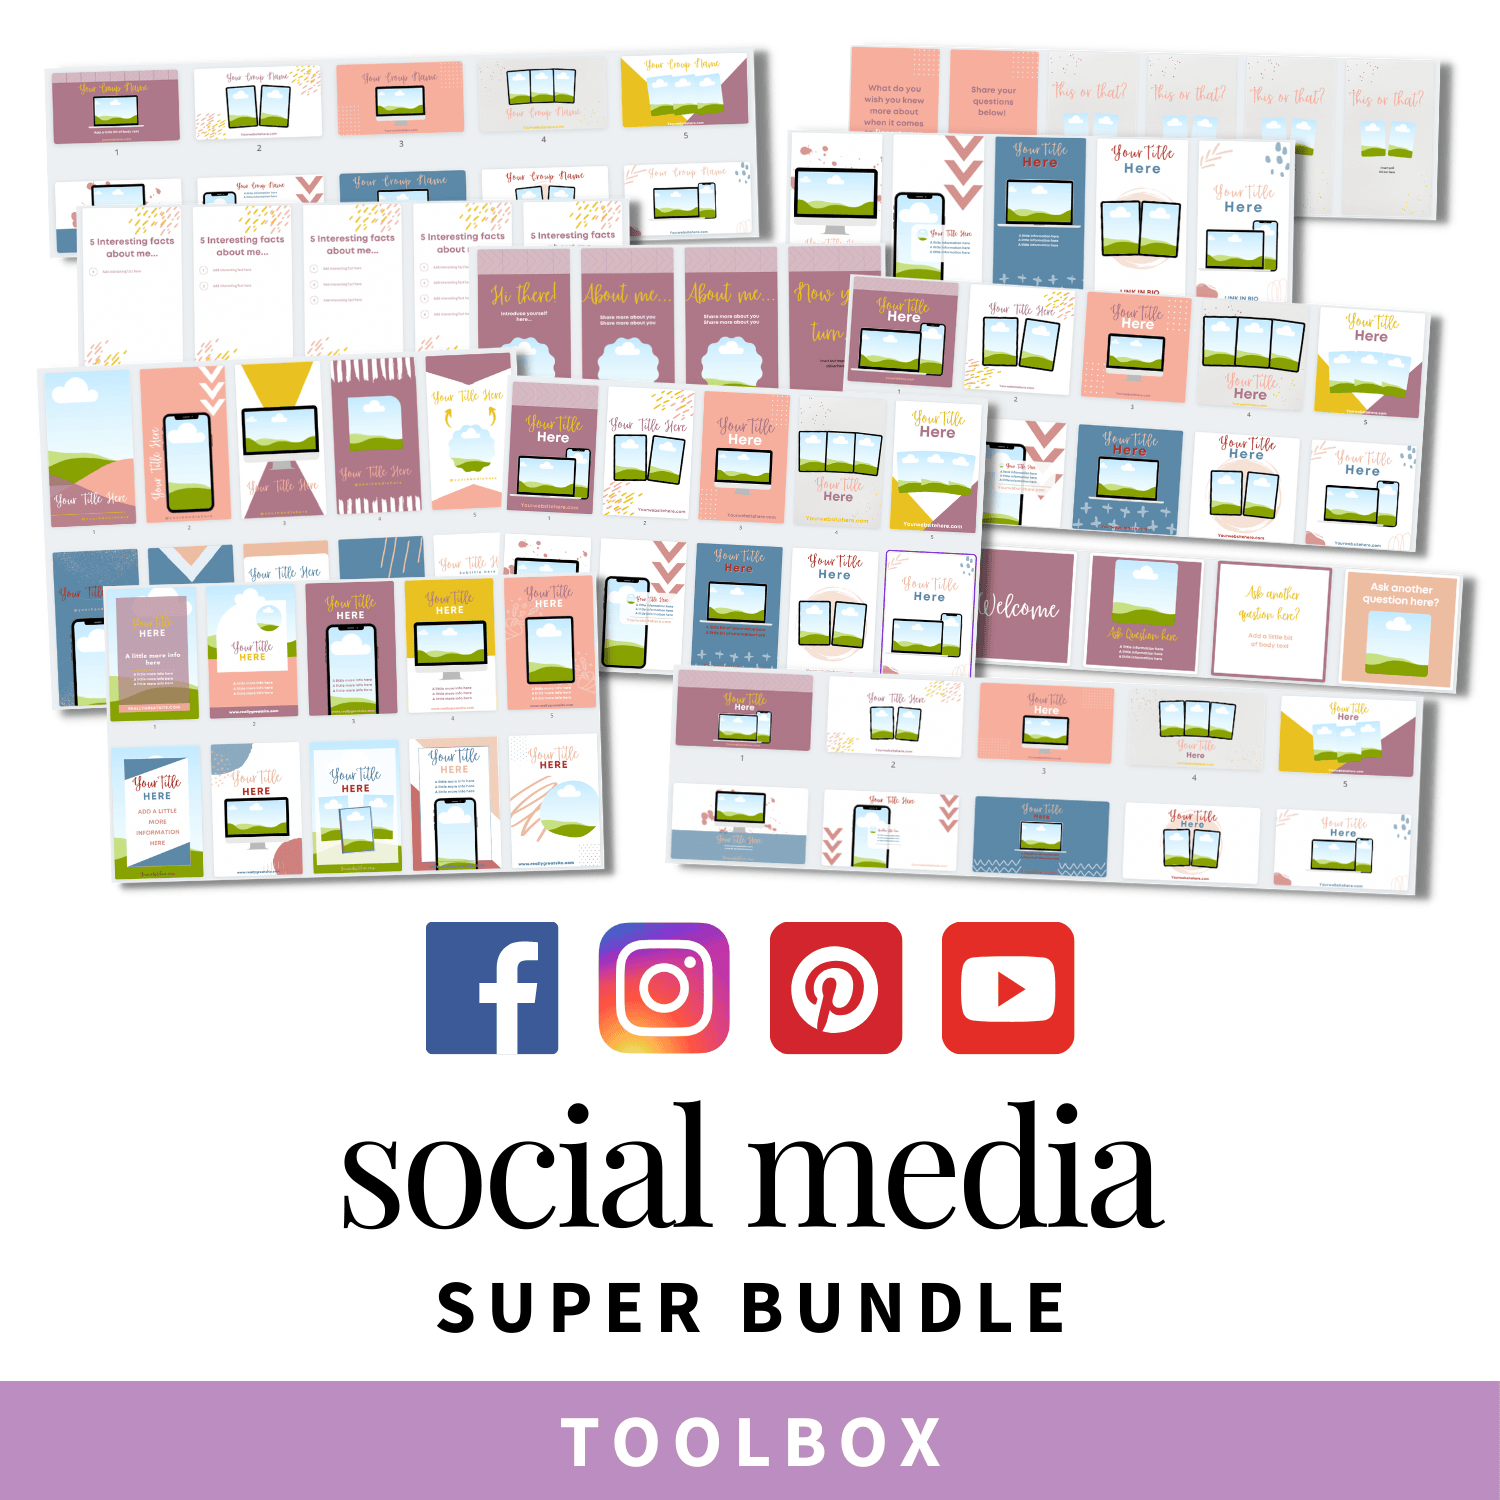 Social Media Super Bundle Toolbox